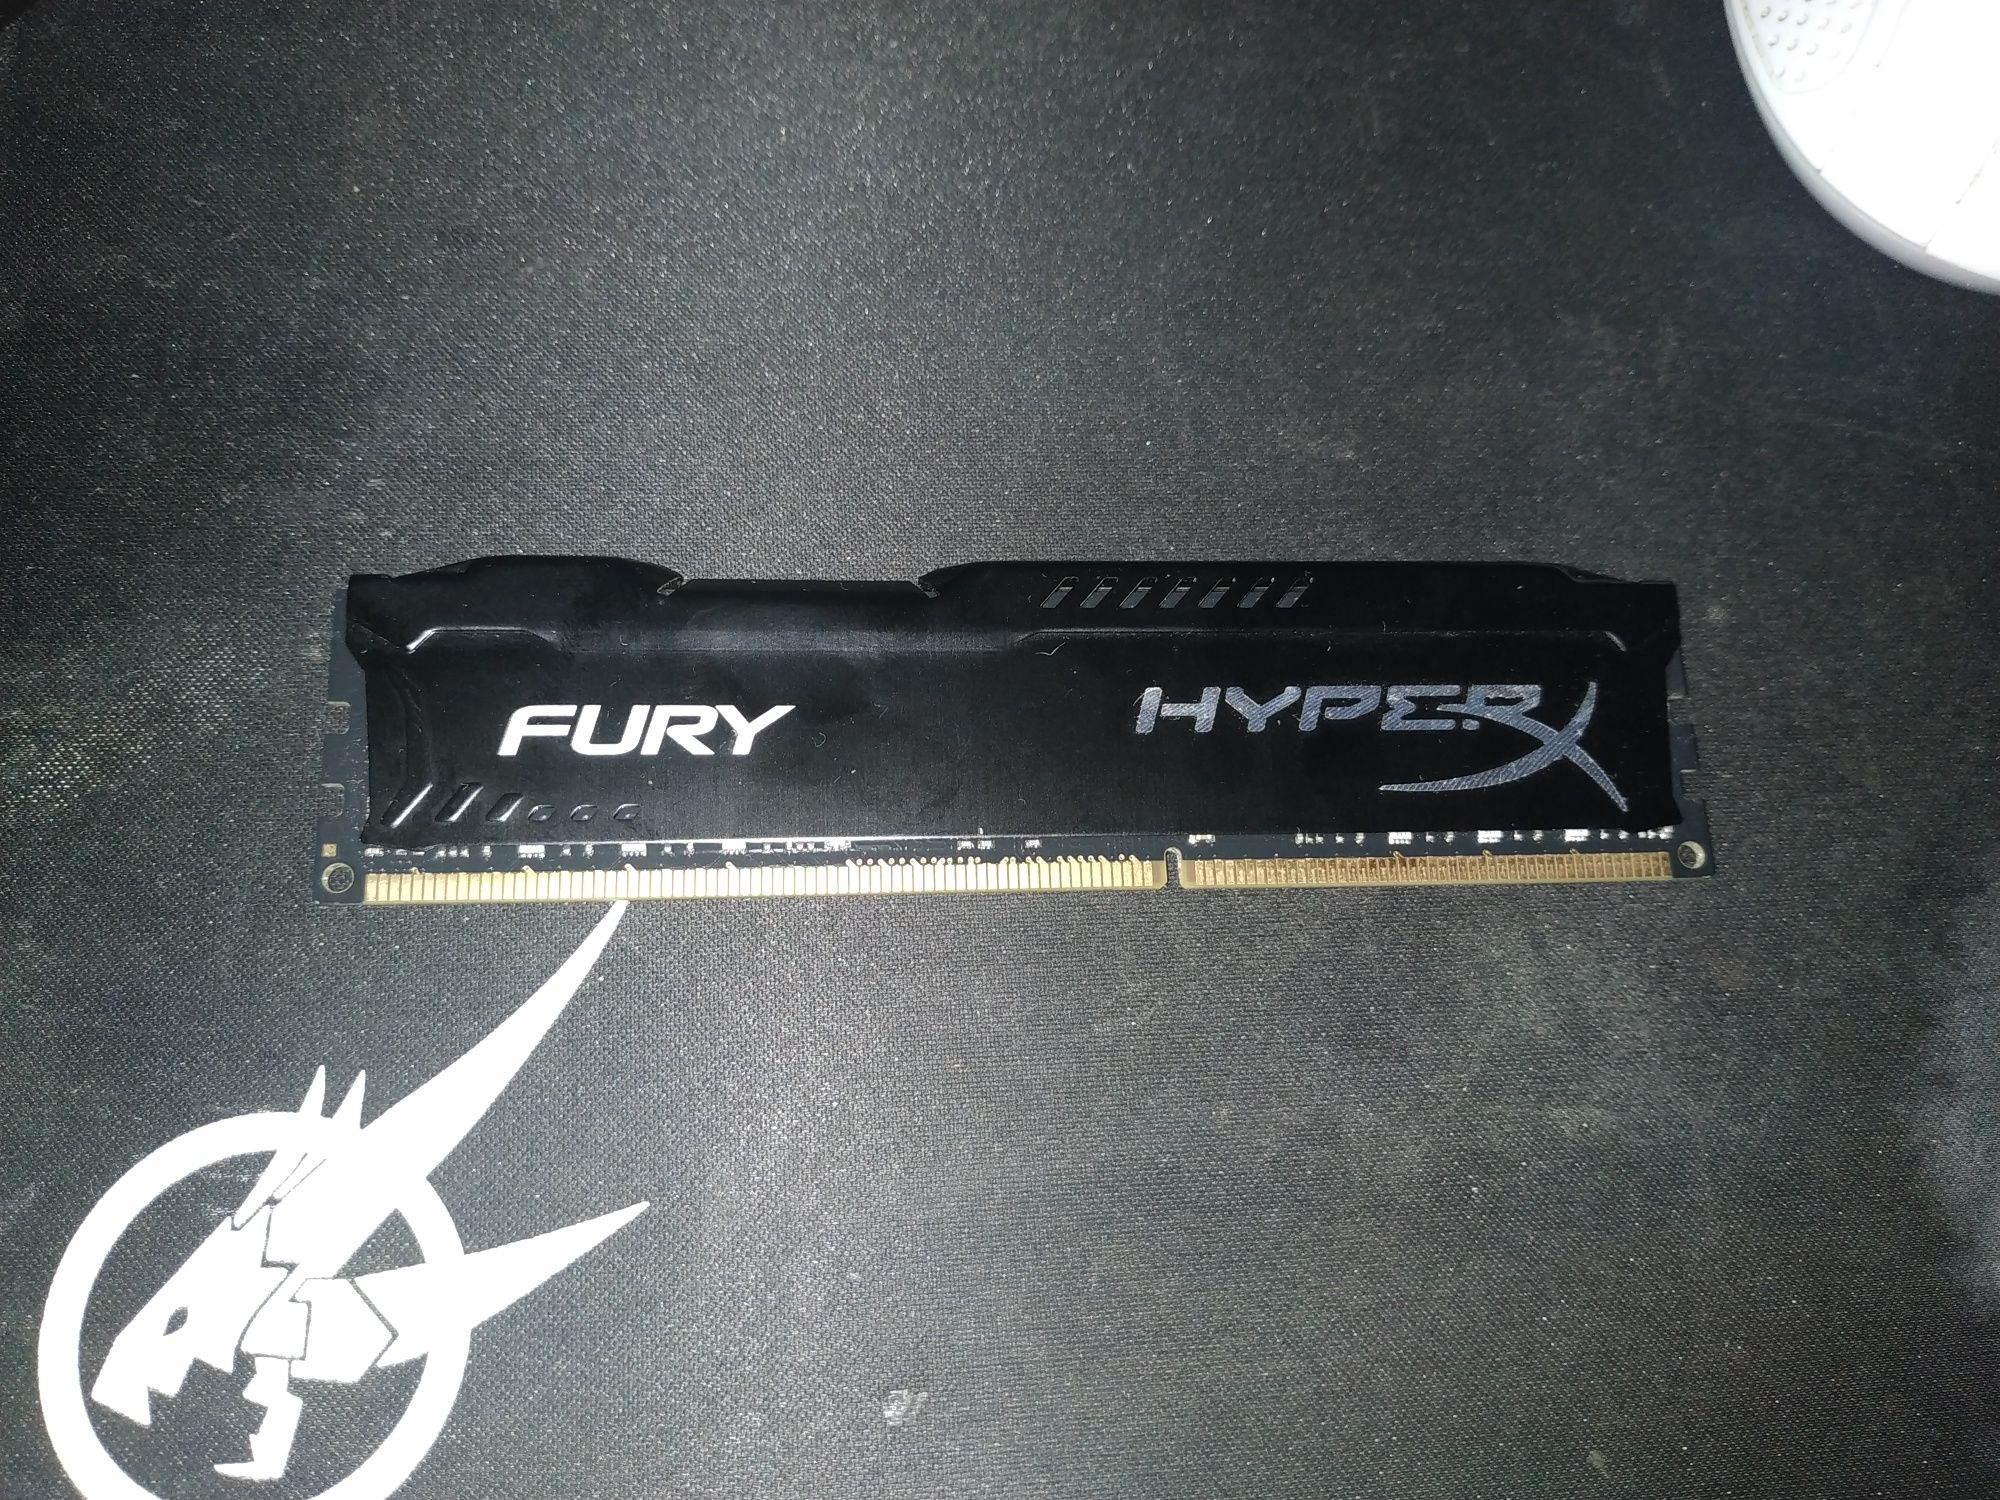 HyperX fury 8gb DDR3 1600mhz cl10